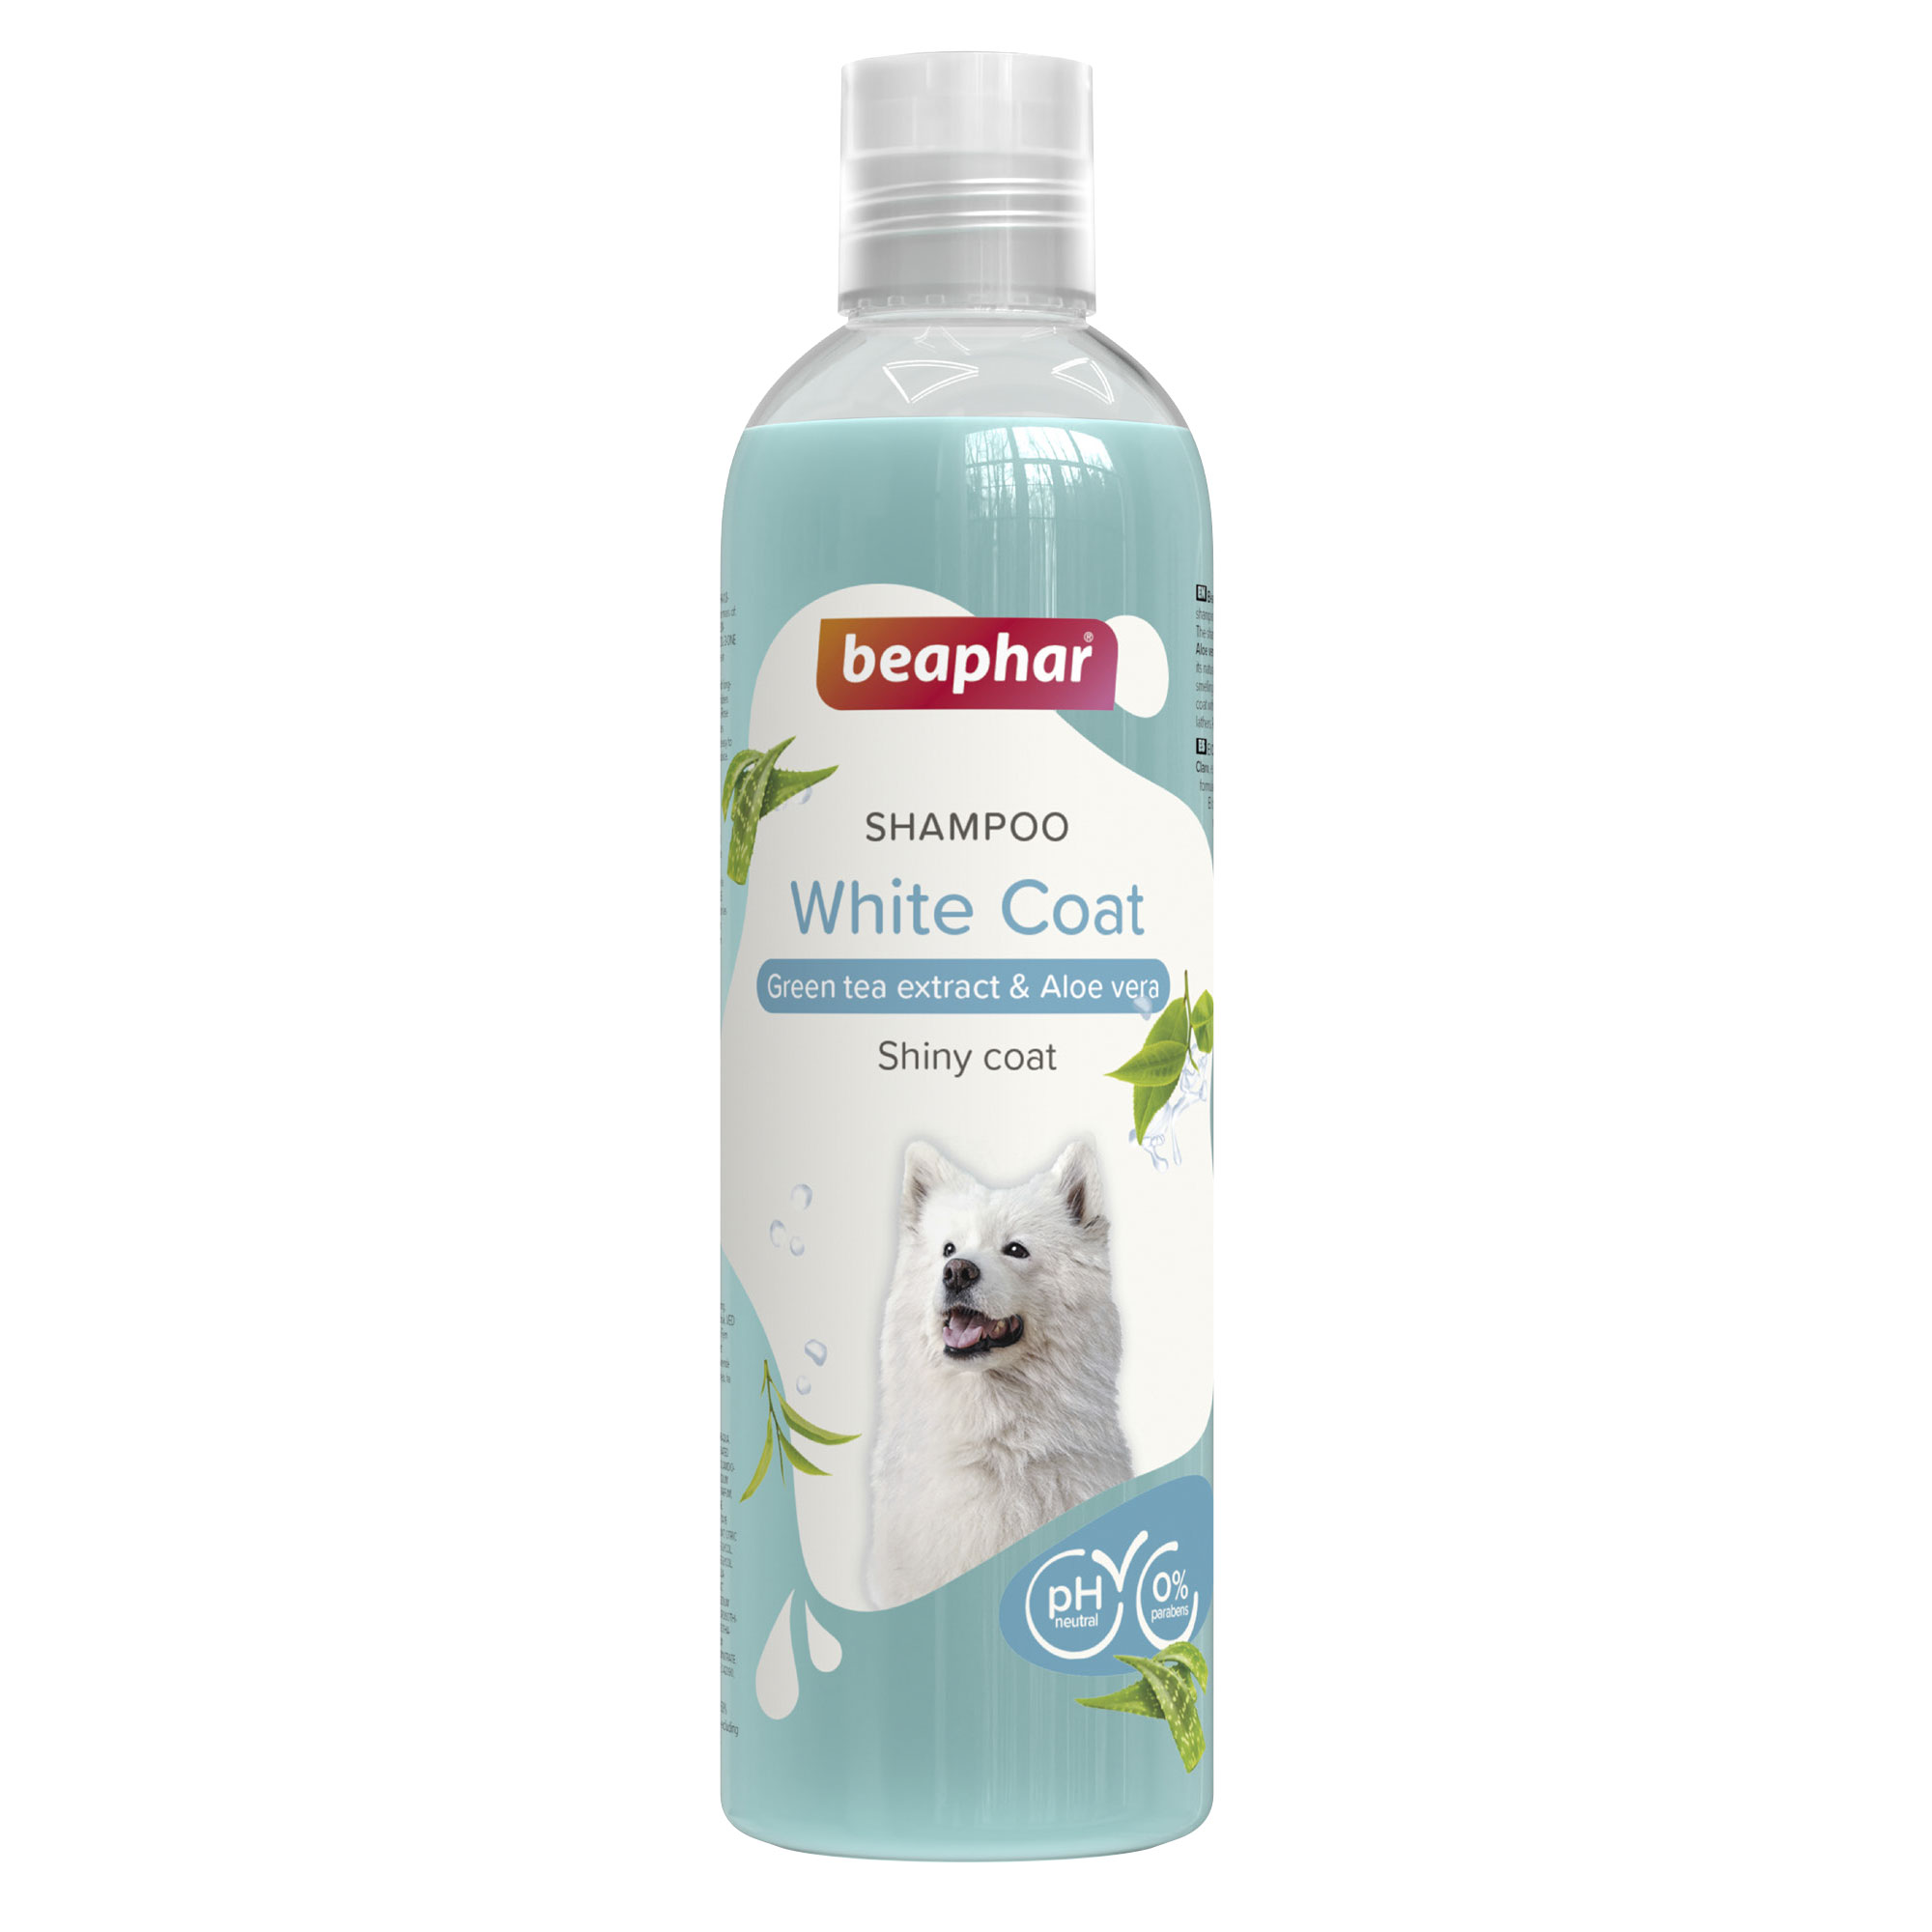 Beaphar Shampoo White Dog